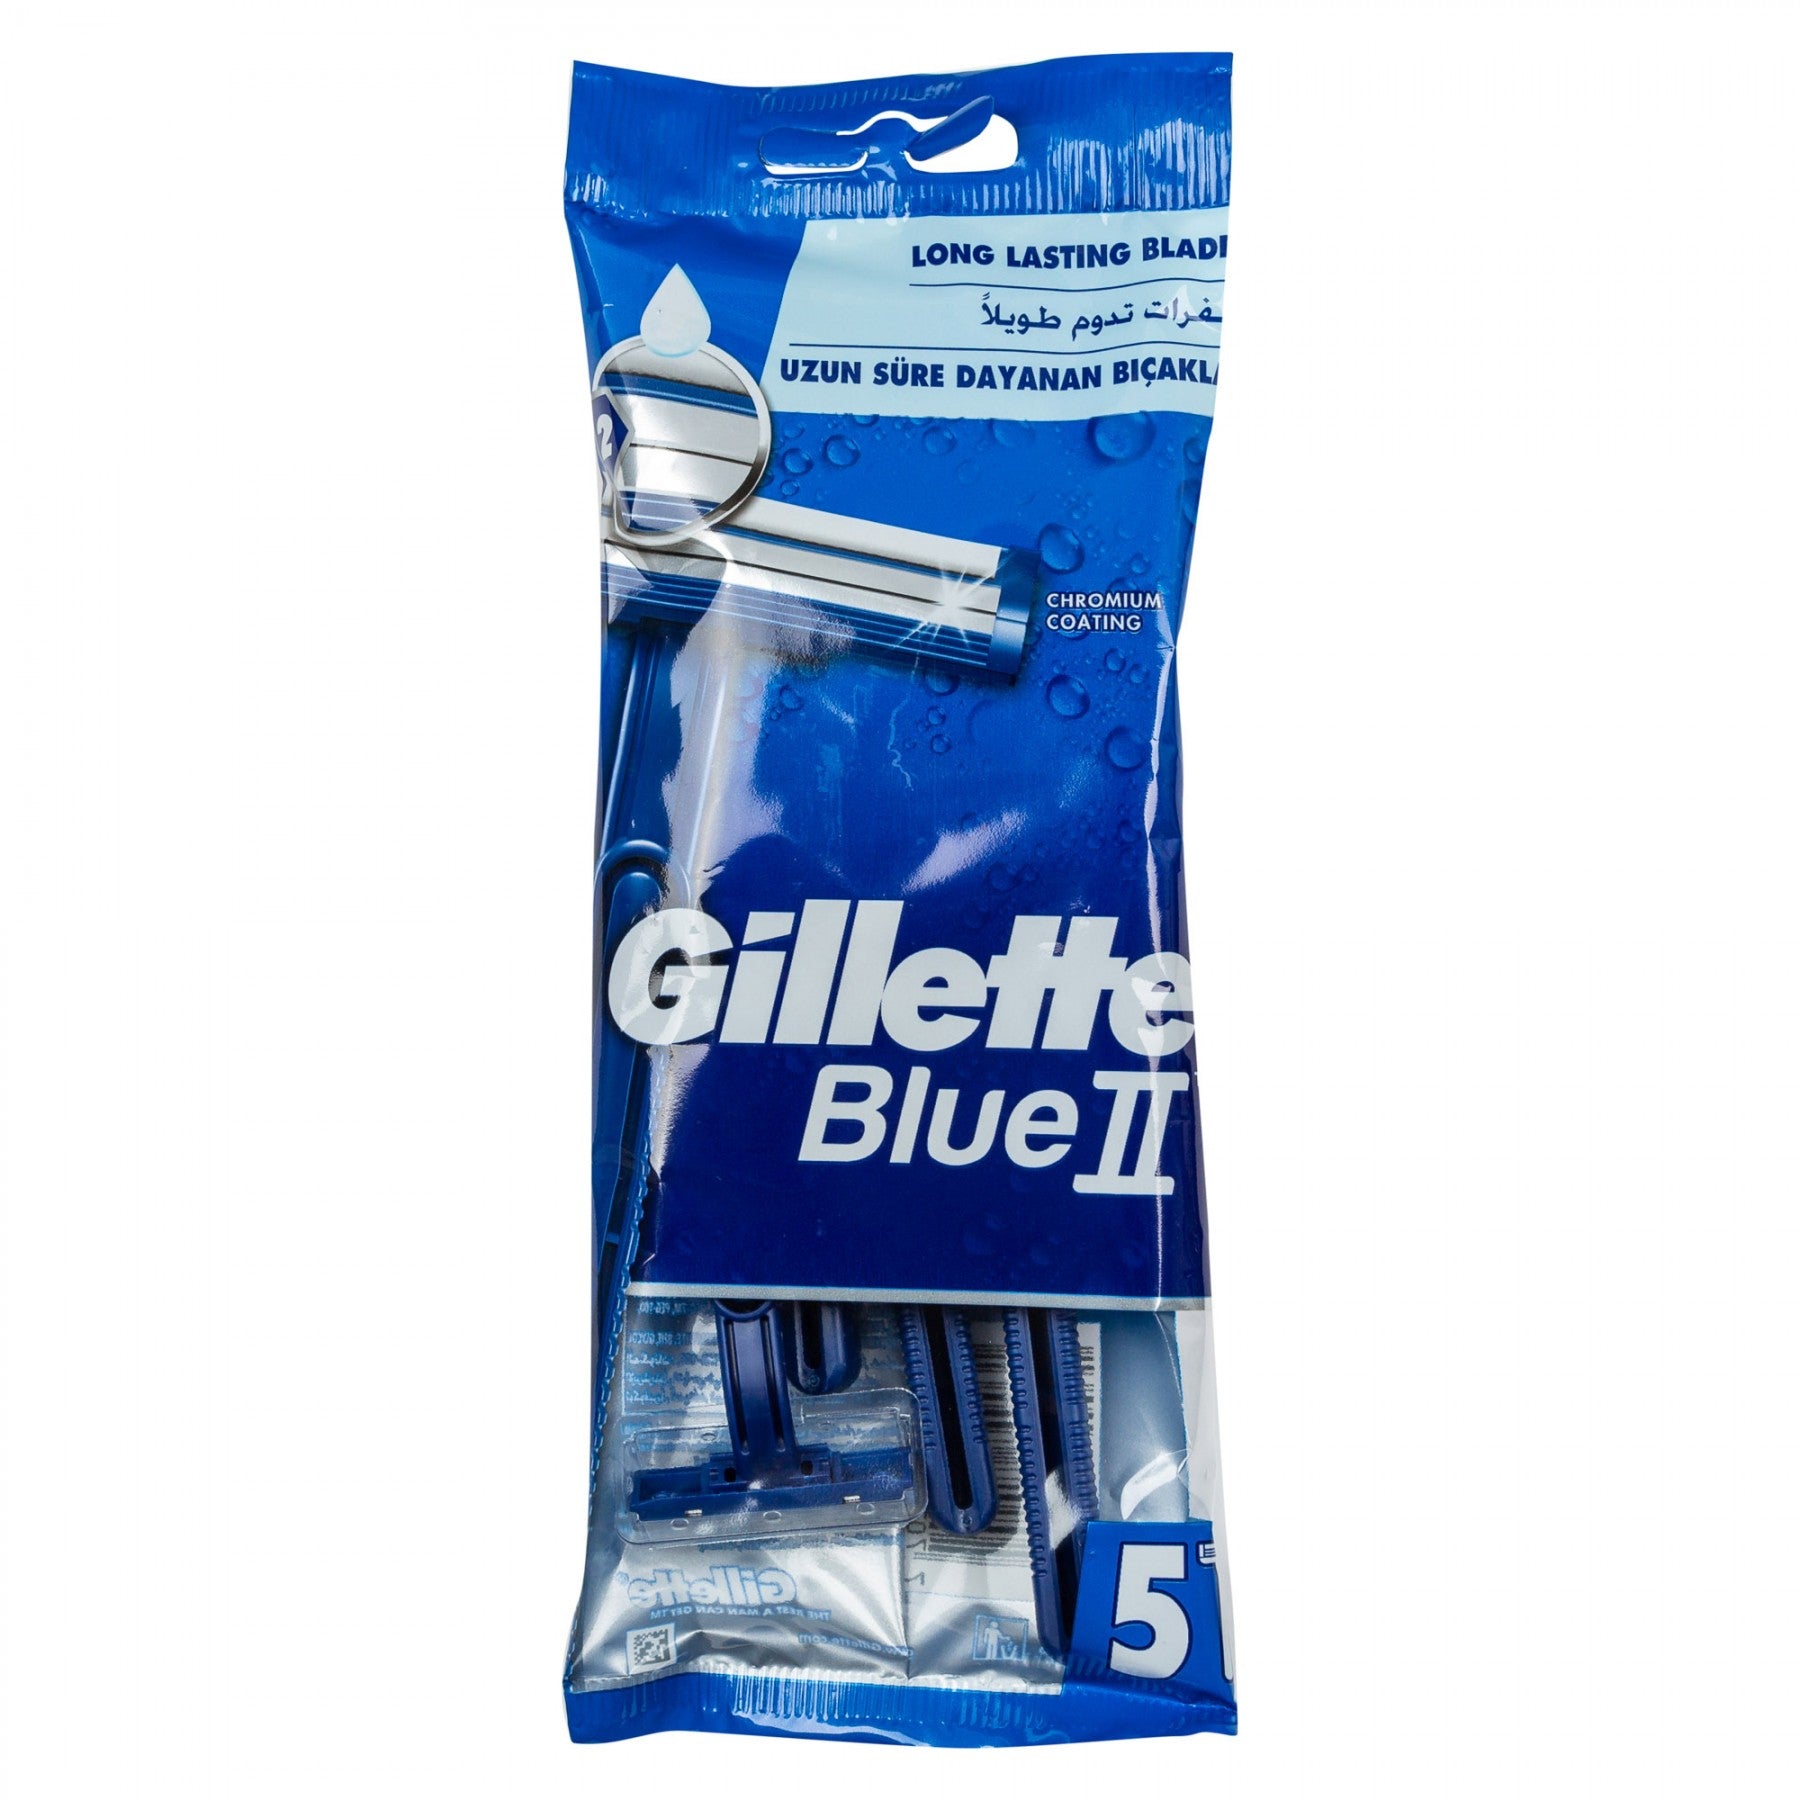 GILLETTE BLUE 2 PLUS 5 - MazenOnline